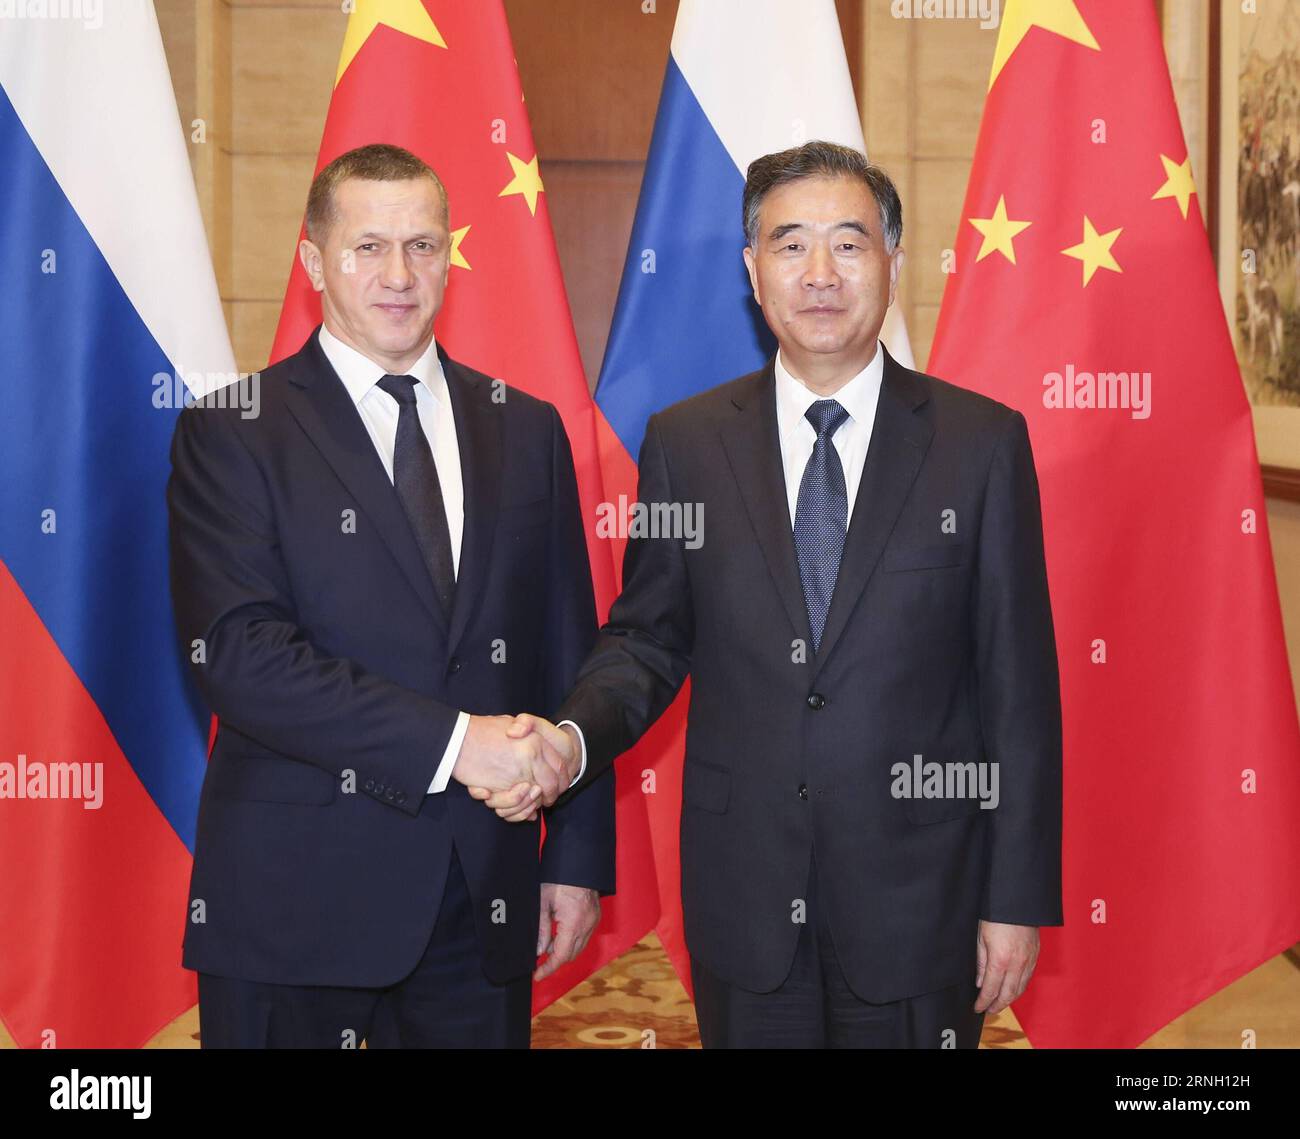 (161020) -- PÉKIN, le 20 octobre 2016 -- le vice-premier ministre chinois Wang Yang (à droite) serre la main de son homologue russe Yury Trutnev, également envoyé présidentiel dans le district fédéral d extrême-Orient de la Russie, au cours de la deuxième réunion du conseil de coopération régionale entre les provinces du nord-est de la Chine et l extrême-Orient de la Russie à Beijing, capitale de la Chine, le 20 octobre 2016. ) (Zyd) CHINA-BEIJING-WANG YANG-TRUTNEV-MEETING (CN) DingxLin PUBLICATIONxNOTxINxCHN Beijing OCT 20 2016 le vice-premier ministre chinois Wang Yang r serre la main de sa partie russe Yury Trutnev ainsi envoyé présidentiel en Russie S extrême-Orient FEDER Banque D'Images